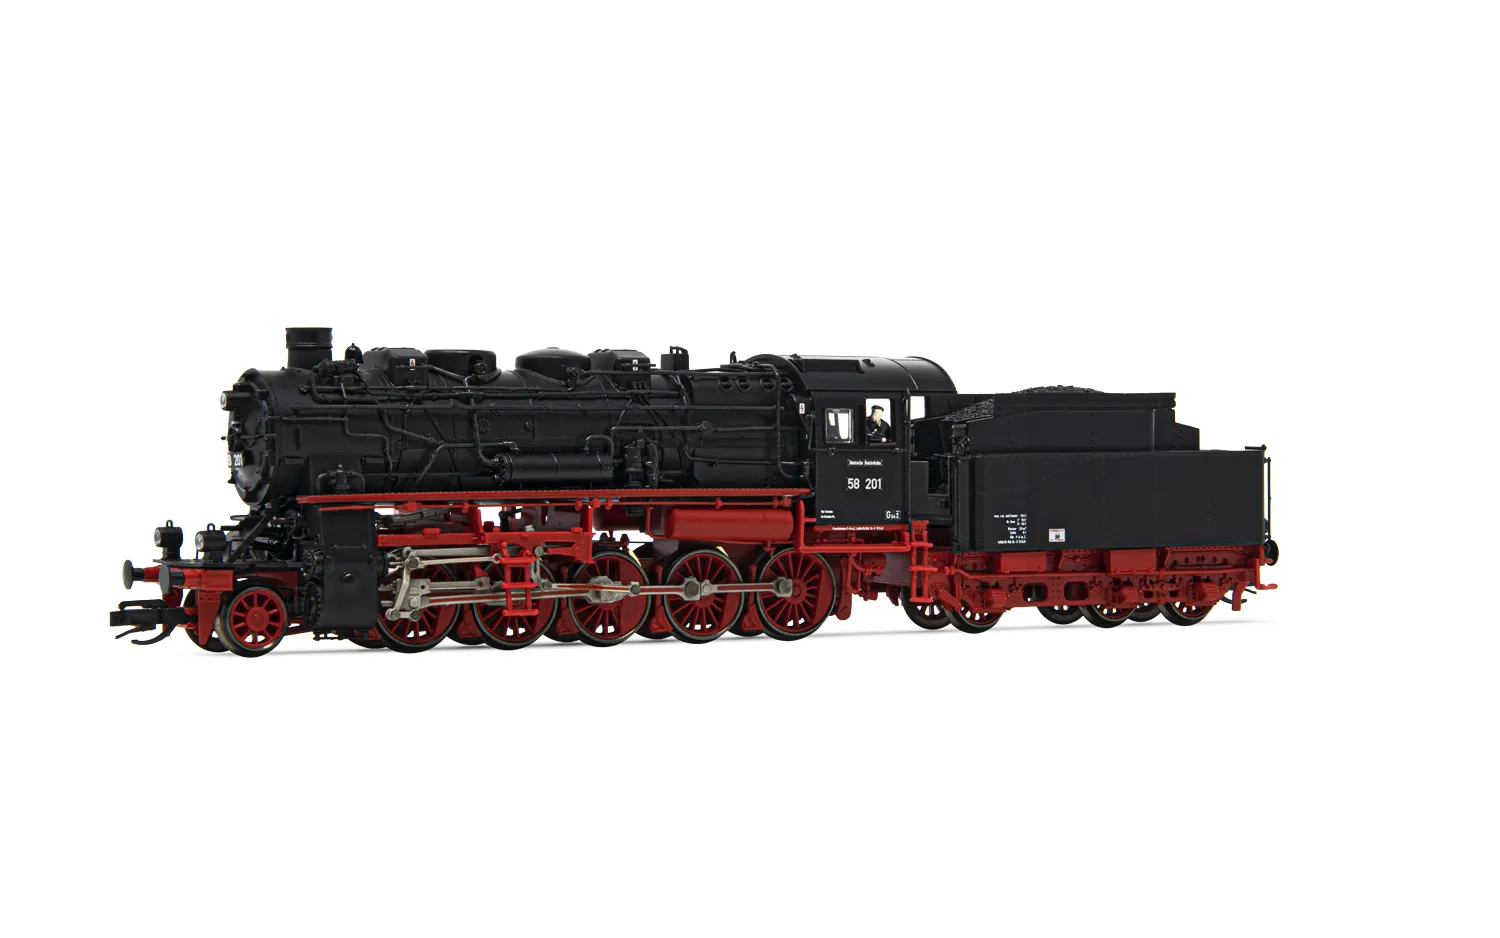 DR, Dampflokomotive 58 201, mit vierdomigem Kessel, in schwarz/roter Lackierung, Ep. III, mit DCC-Sounddecoder